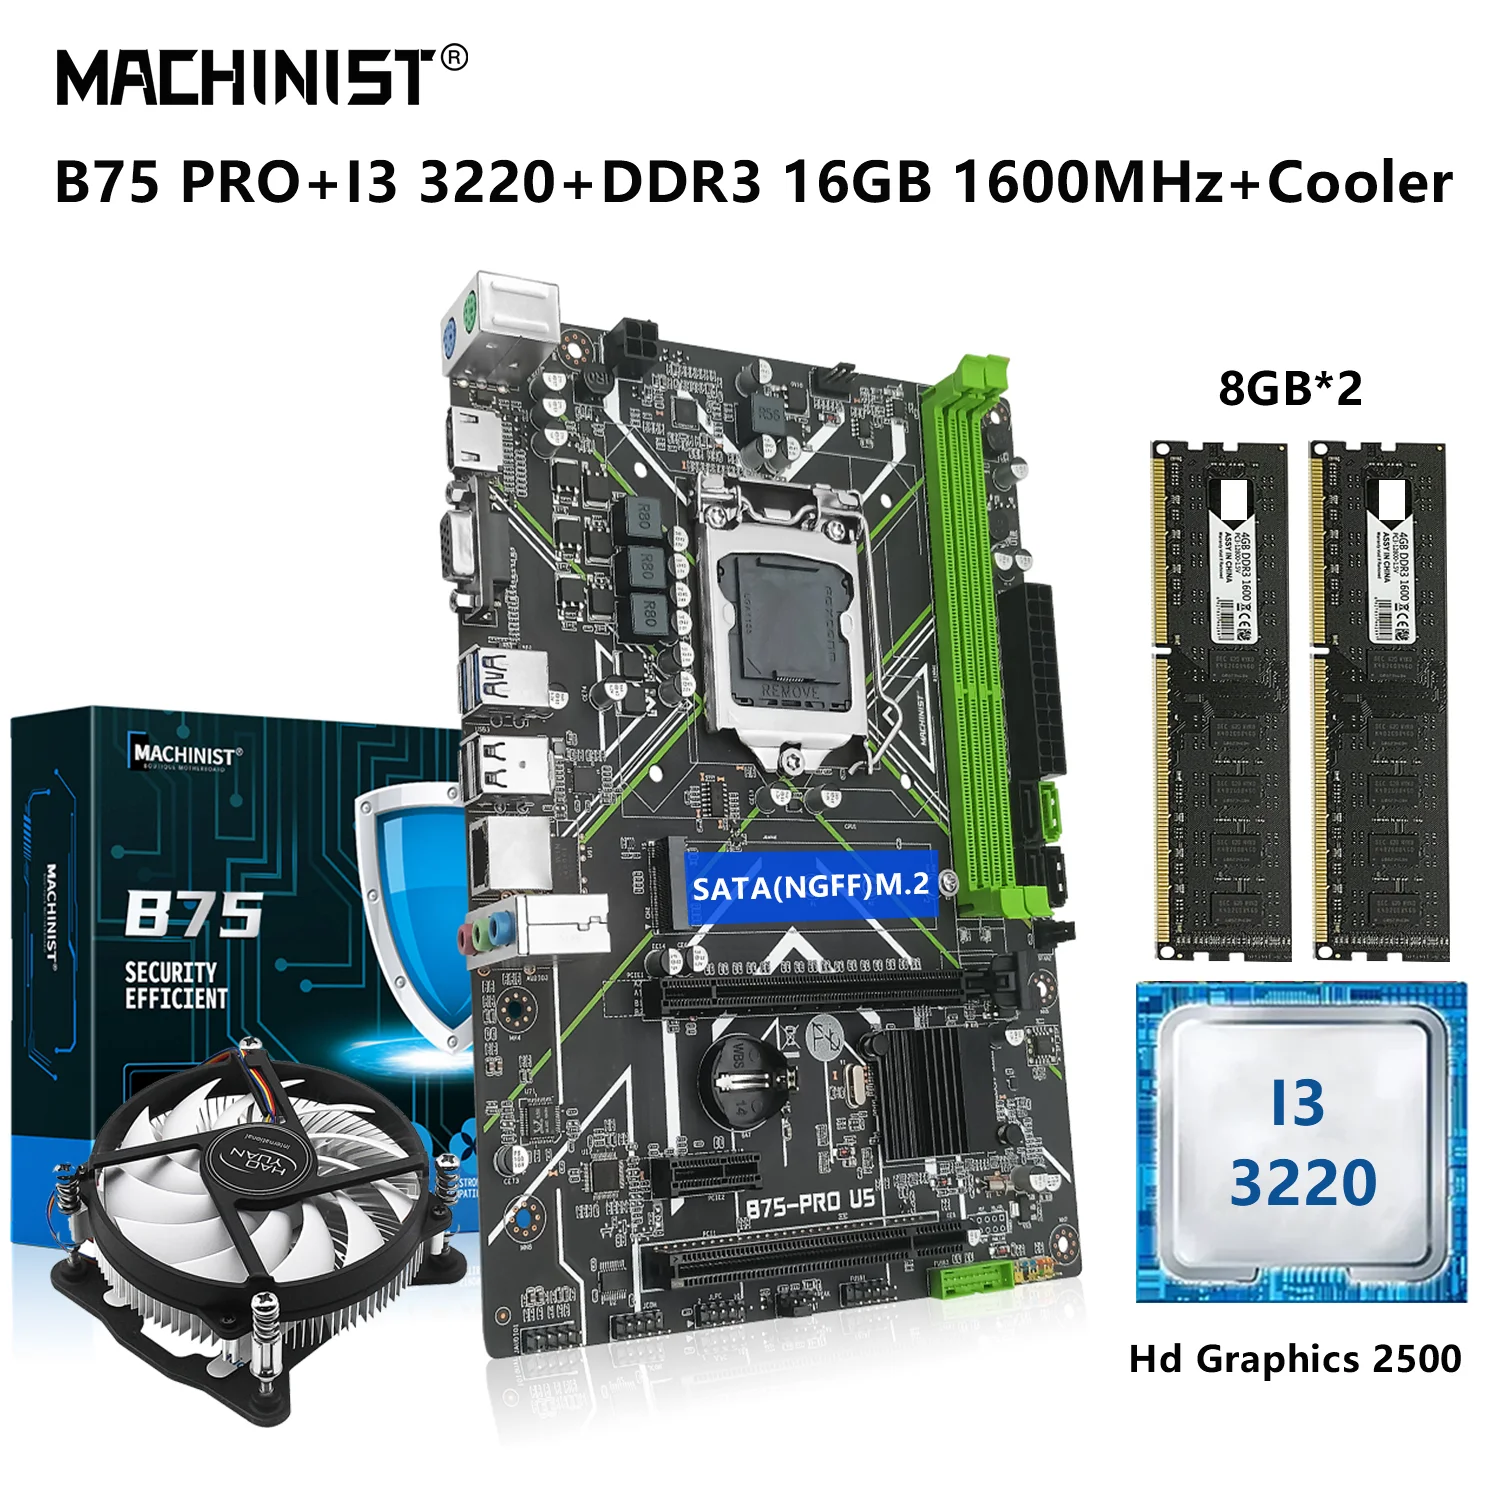 

MACHINIST B75 Motherboard Kit LGA 1155 Set With Intel I3 3220 CPU Processor 16G=2*8G DDR3 RAM Memory SATA3 NGFF M.2 B75-PRO-U5